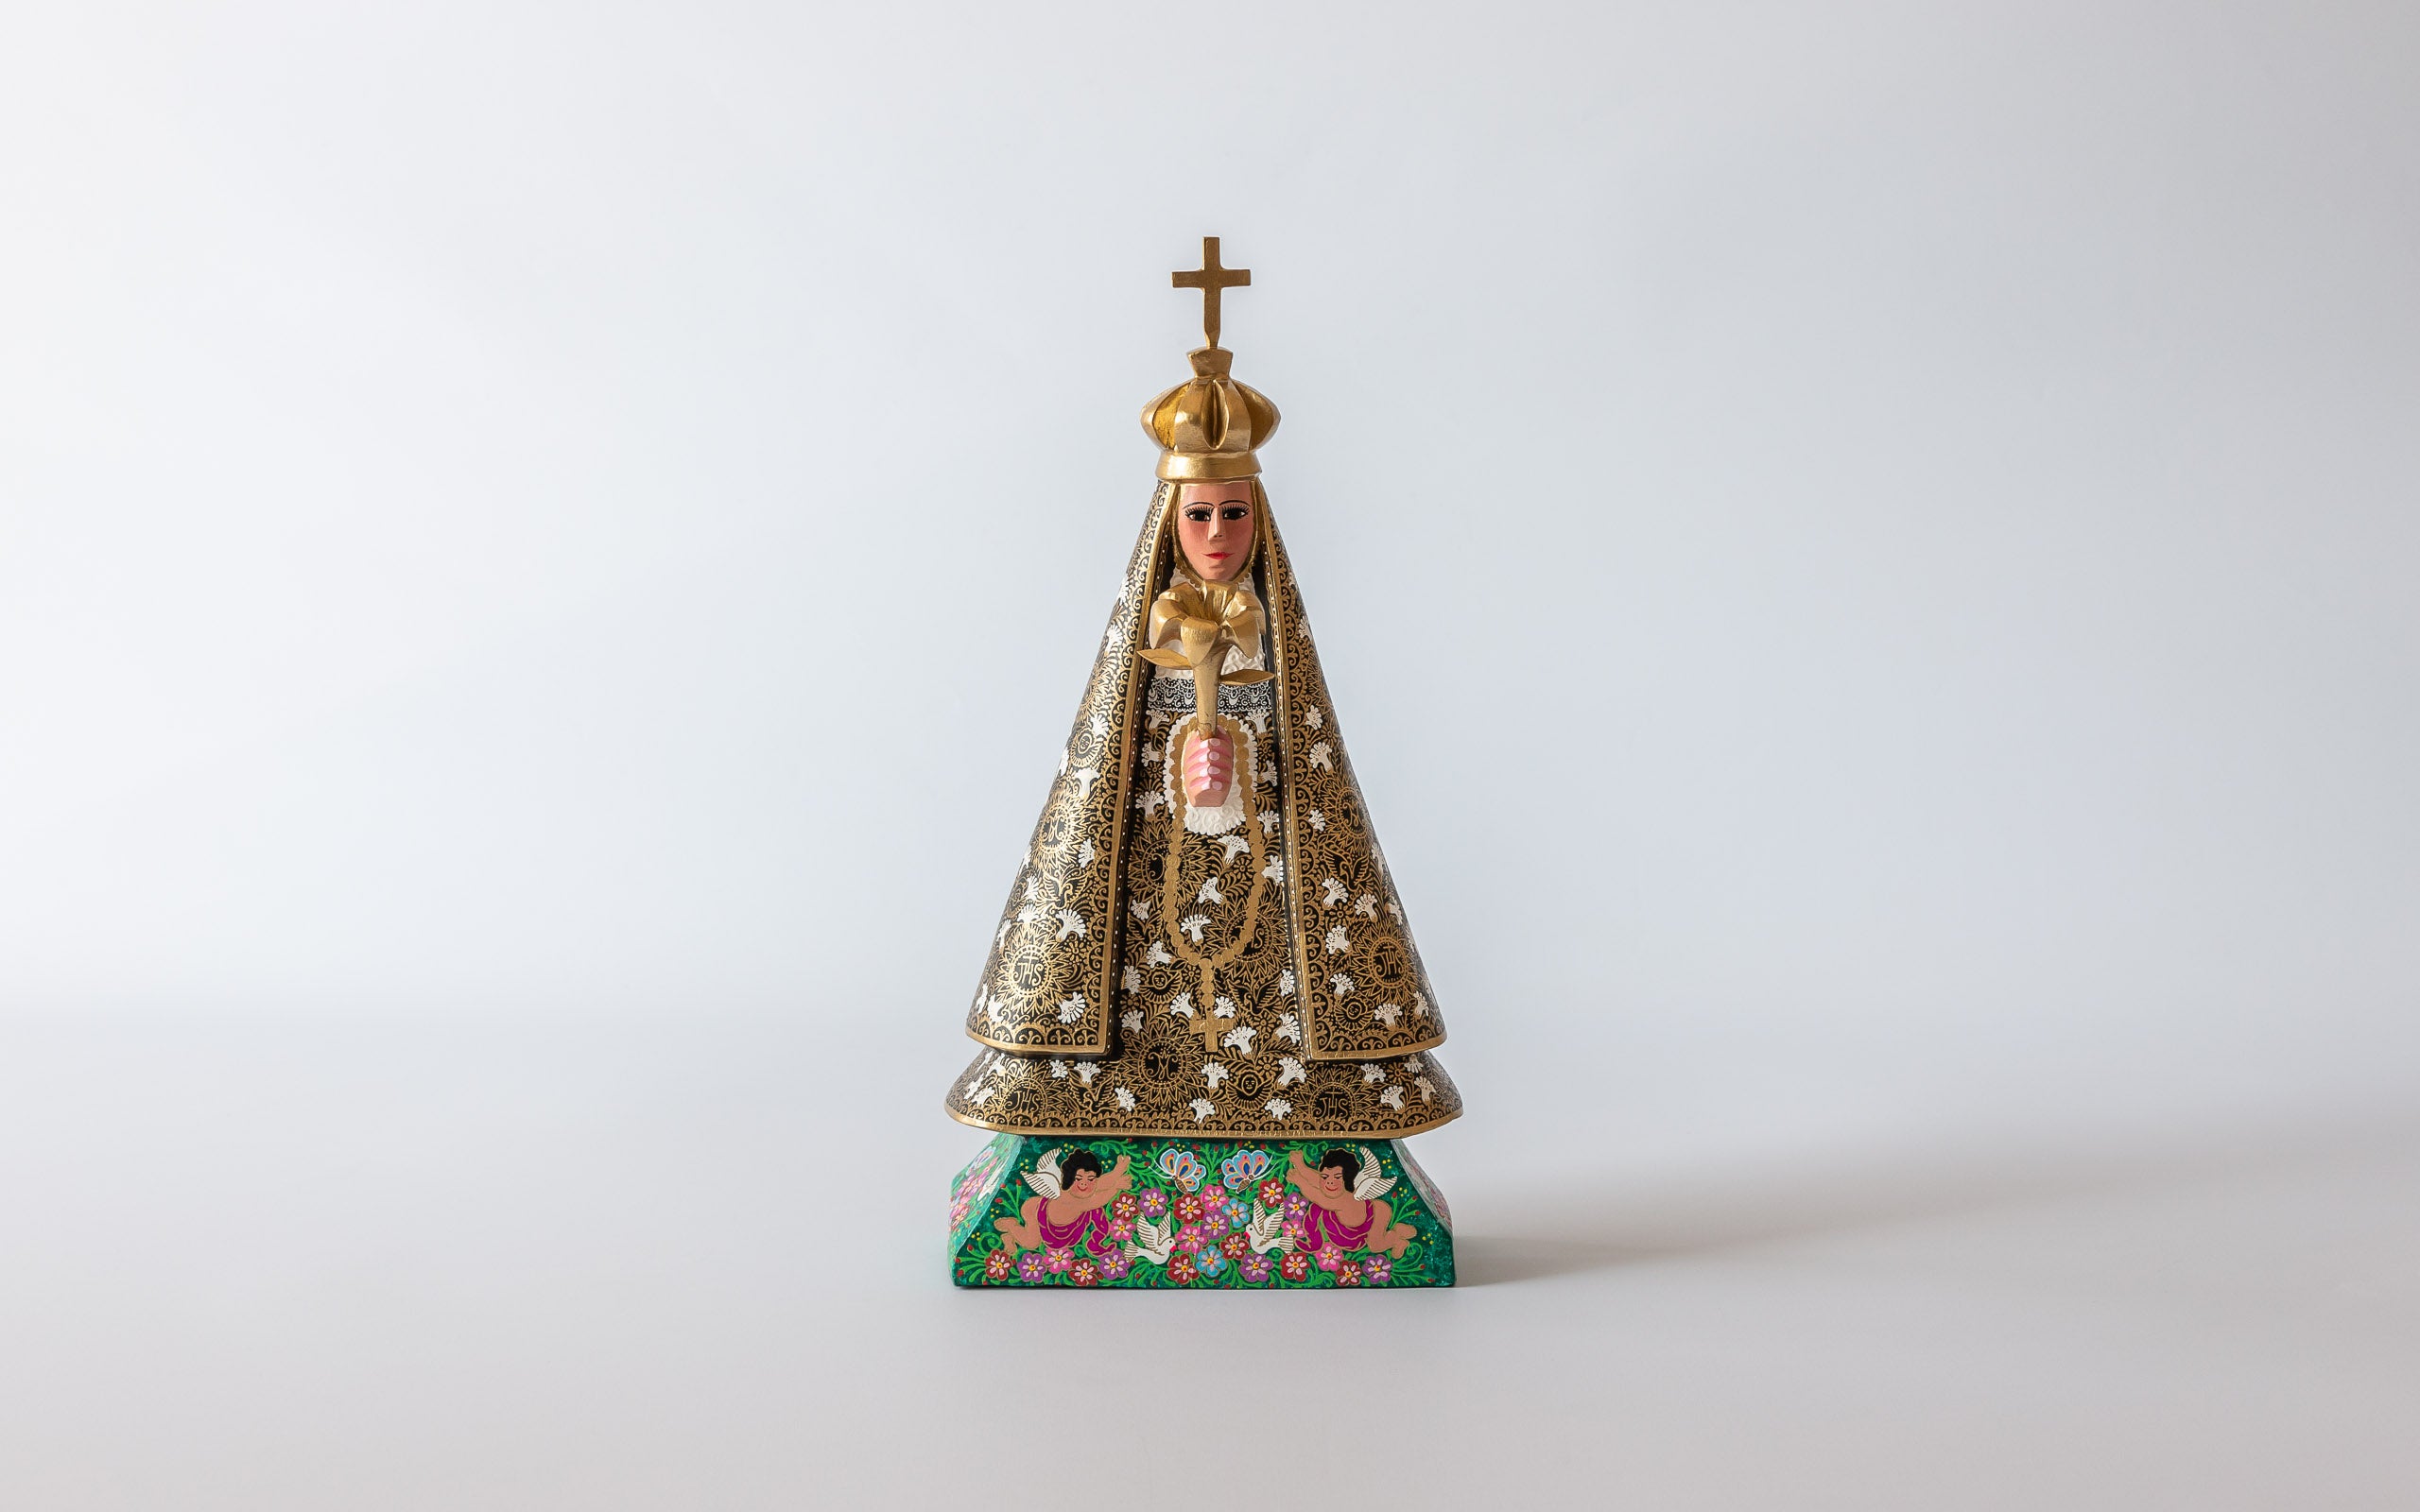 Unsere Dame von Guadalupe: Frontal, in goldenem Gewand auf Blumenwiese stehend, Kunsthandwerk von Oaxaca.